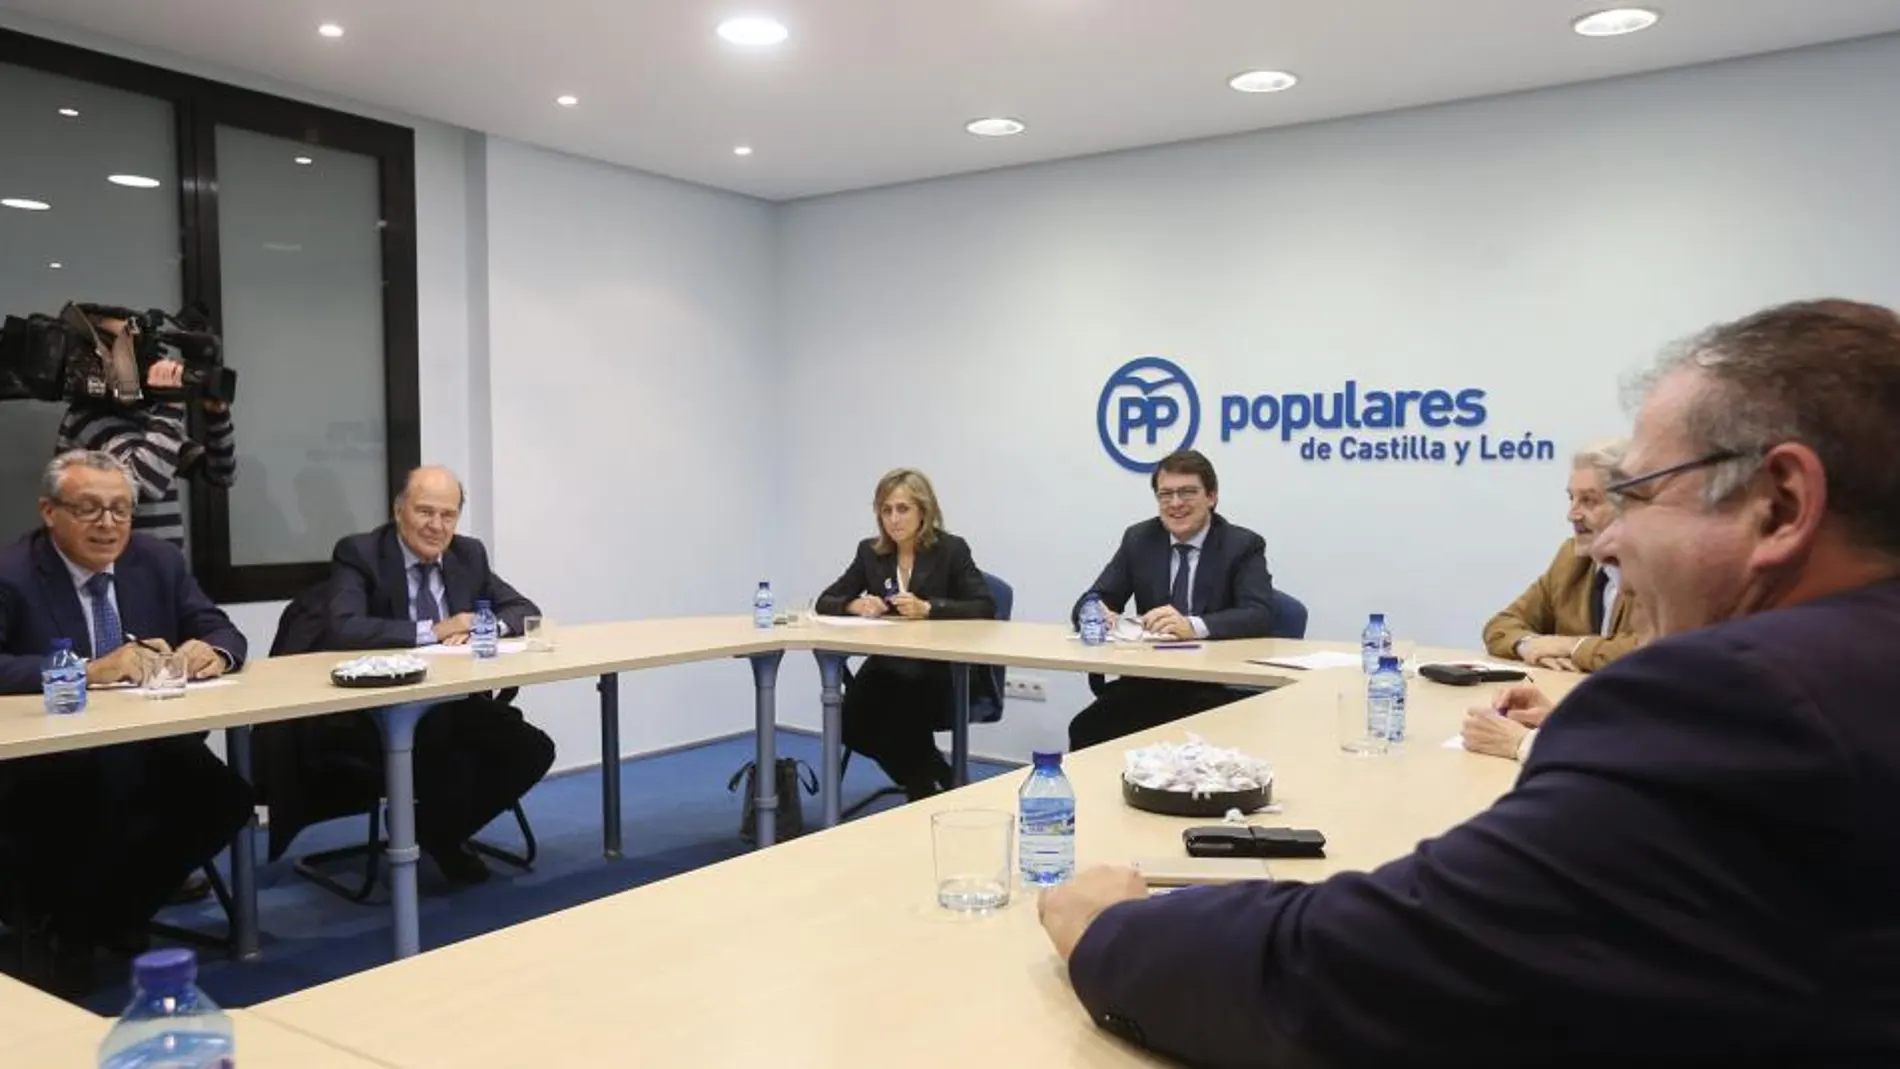 El presidente del PP de Castilla y León, Alfonso FernÃ¡ndez Mañueco, se reúne con el Consejo de Colegios de Médicos de Castilla y León